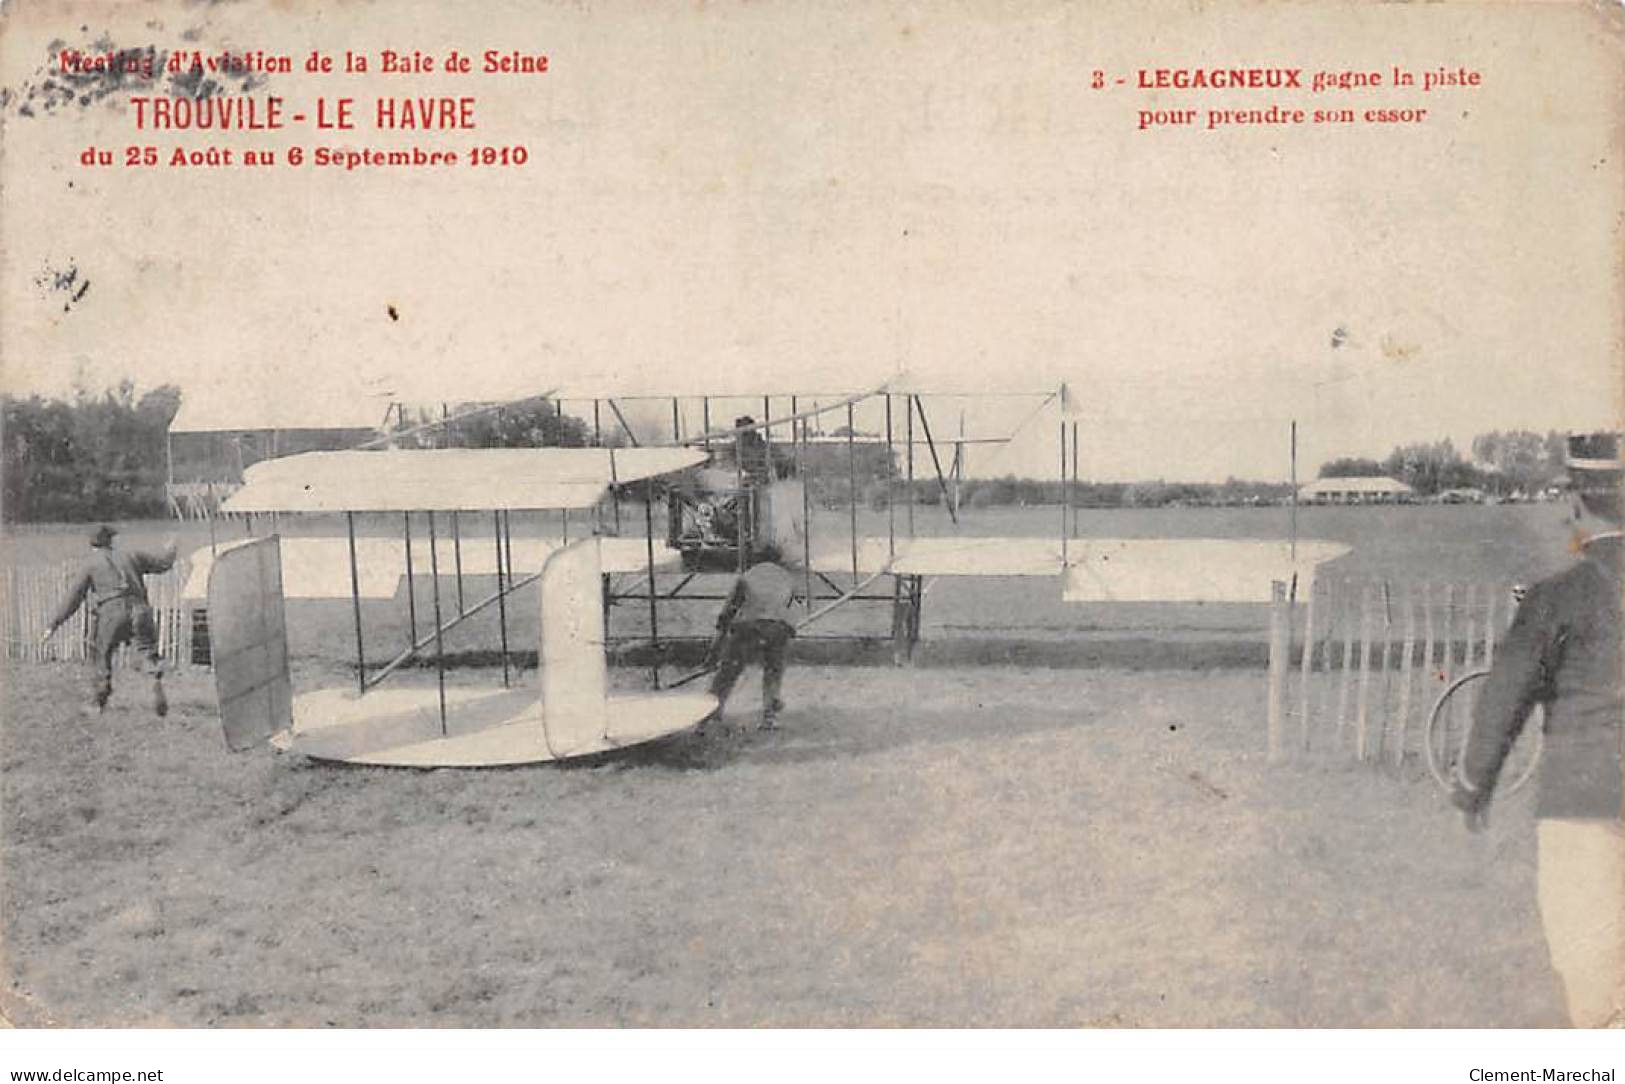 Meeting D'Aviation De La Baie De Seine - TROUVILLE - LE HAVRE - 1910 - Legagneux - état - Zonder Classificatie